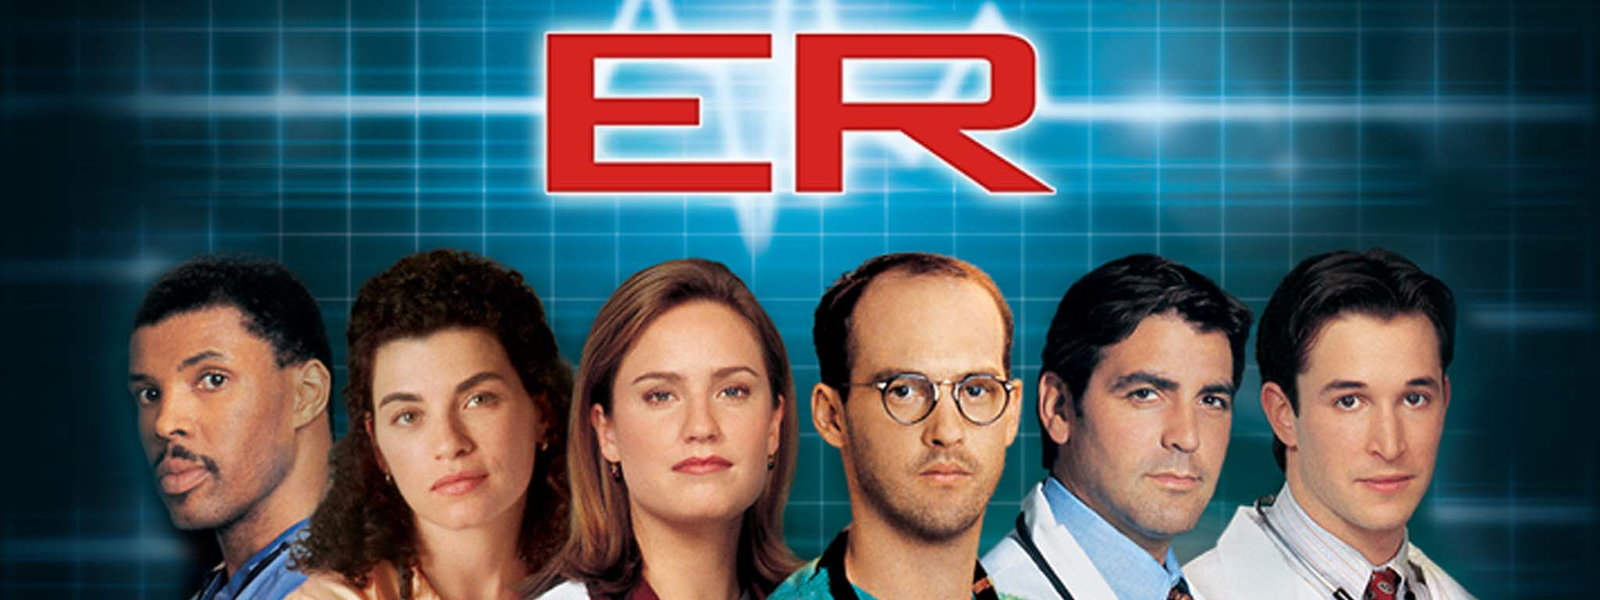 Throwback Thursday: ER On Hulu